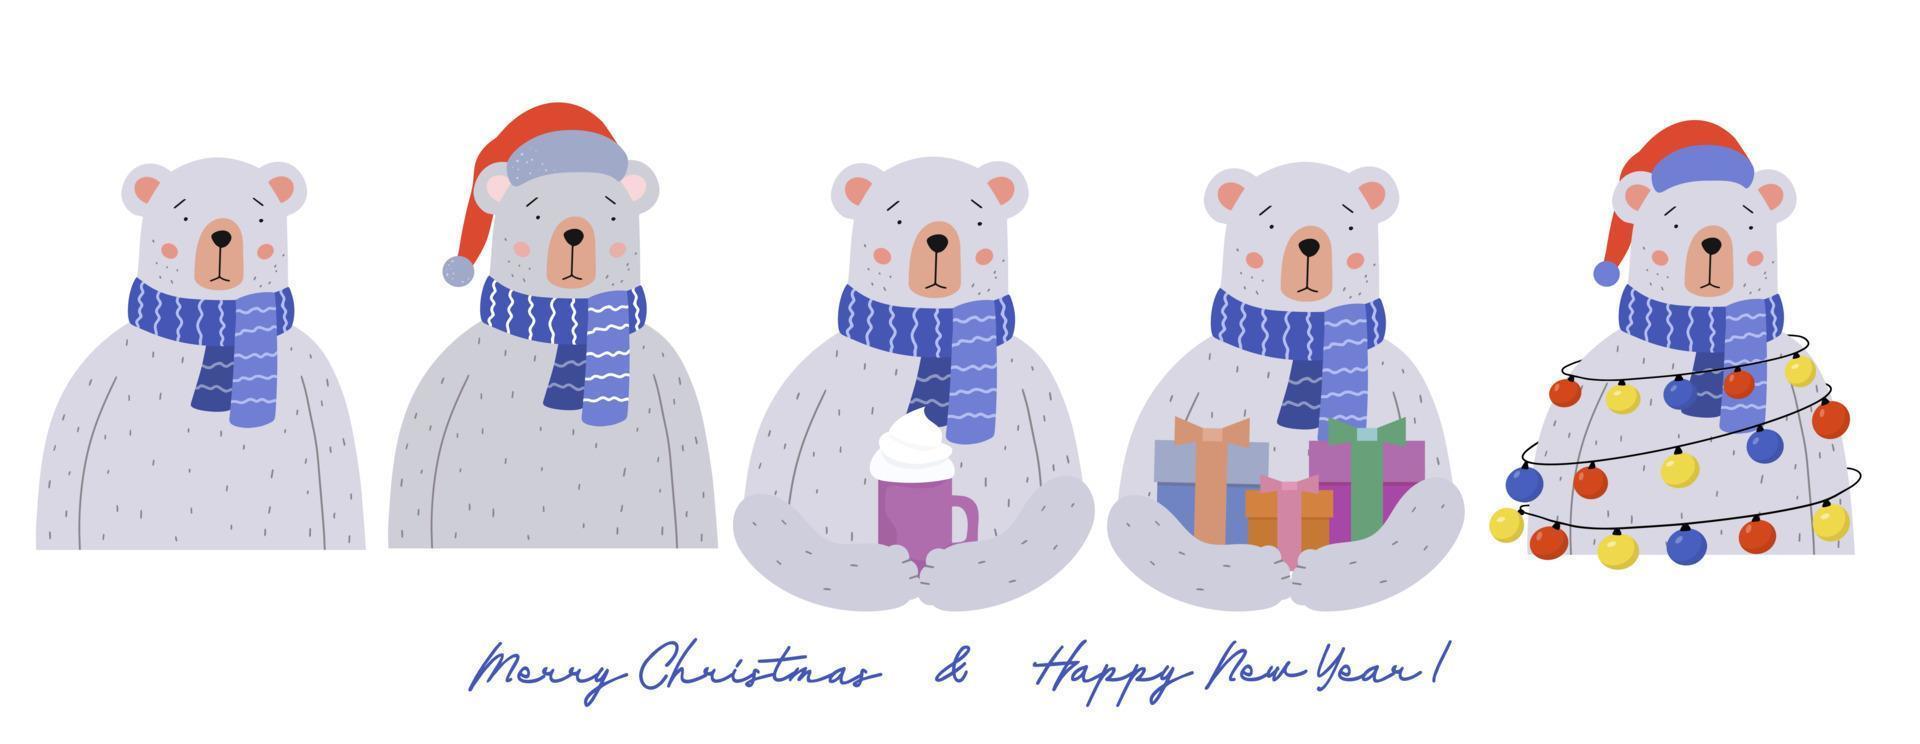 un conjunto de osos de peluche con regalos de navidad, una guirnalda de luces de colores y un sombrero de santa. vector